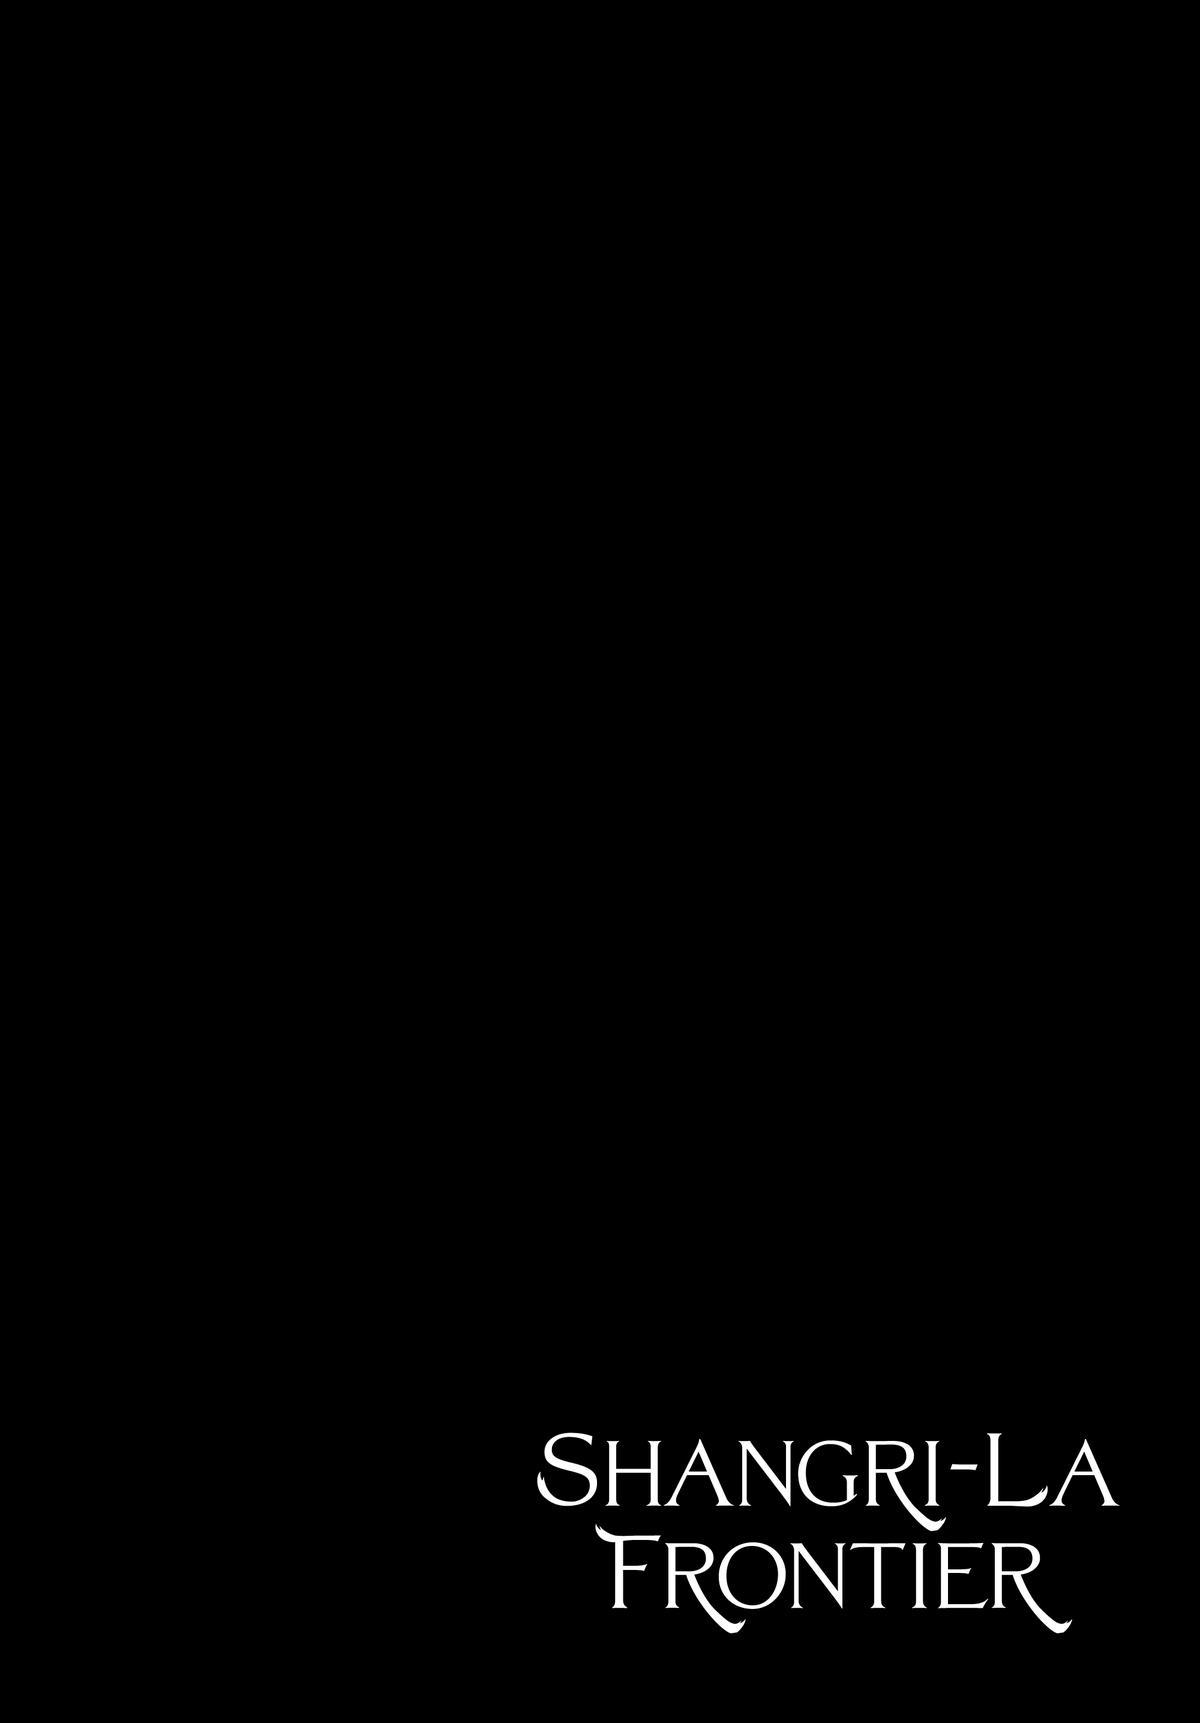 Shangri-la Frontier, Chapter 126 image 05